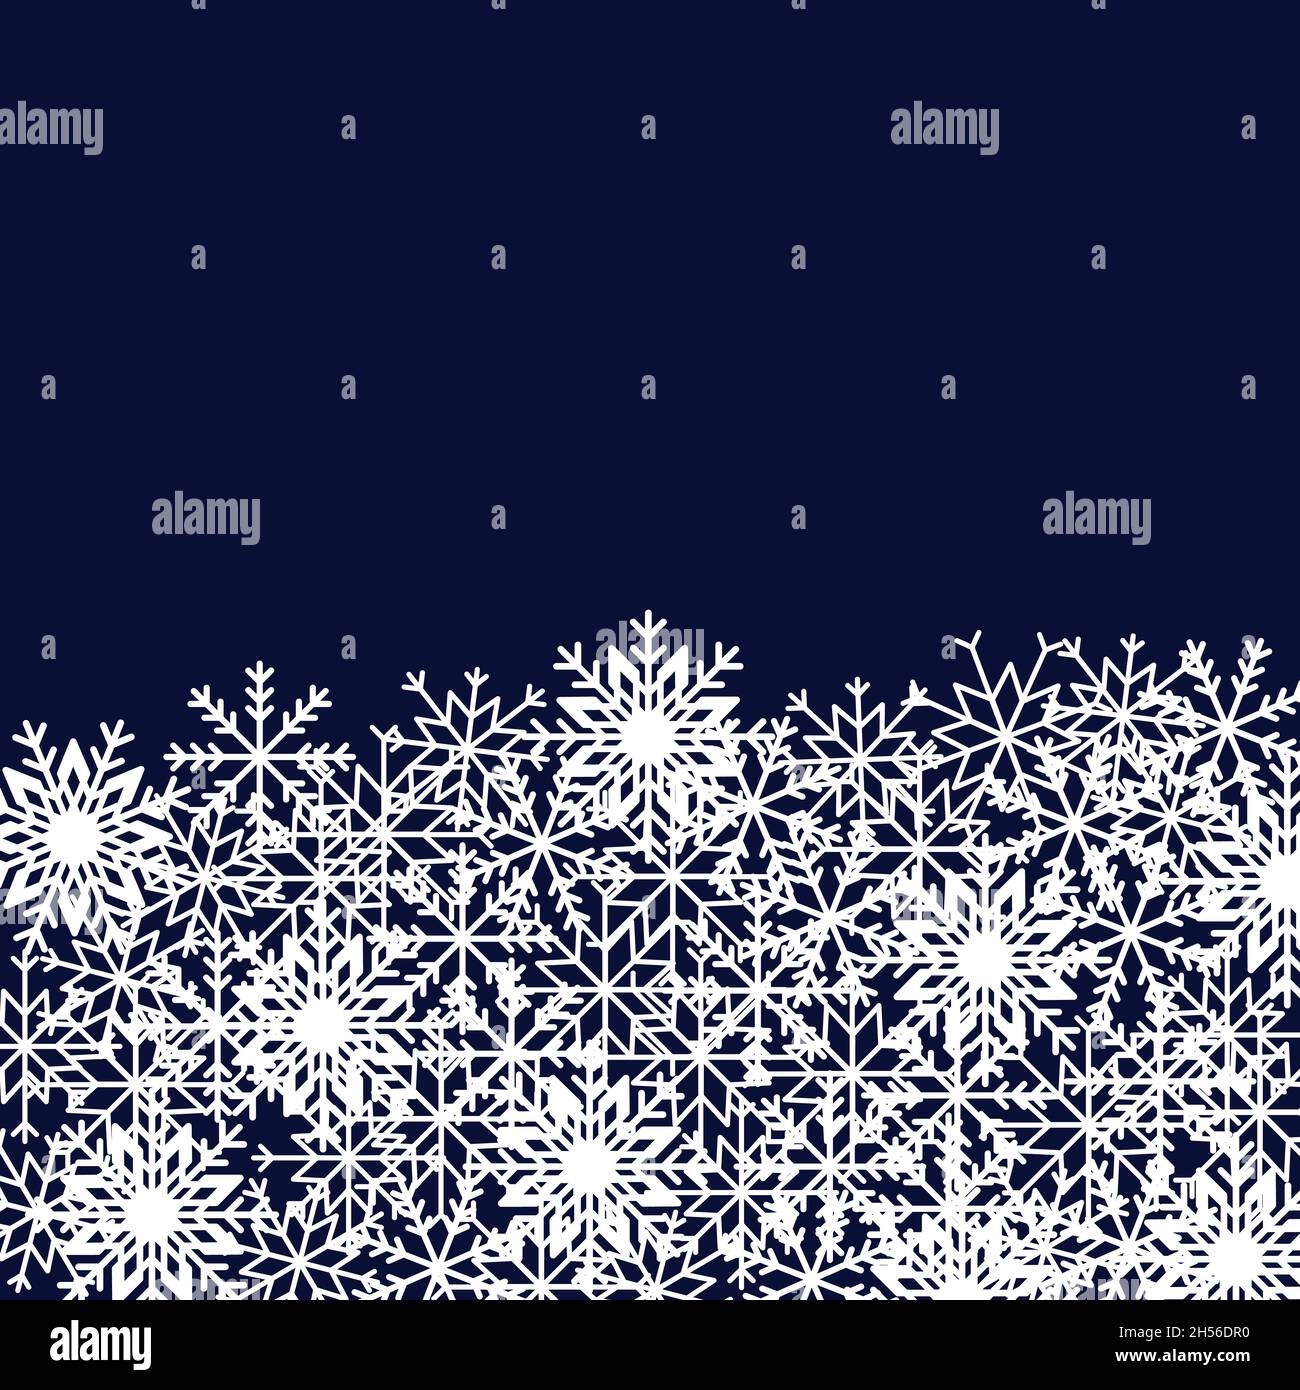 Winterhintergrund mit Schneeflocken in verschiedenen Formen und Größen. Vektordarstellung von Designelementen für Grußkarten, Poster, Tapeten, Oberflächen Stock Vektor